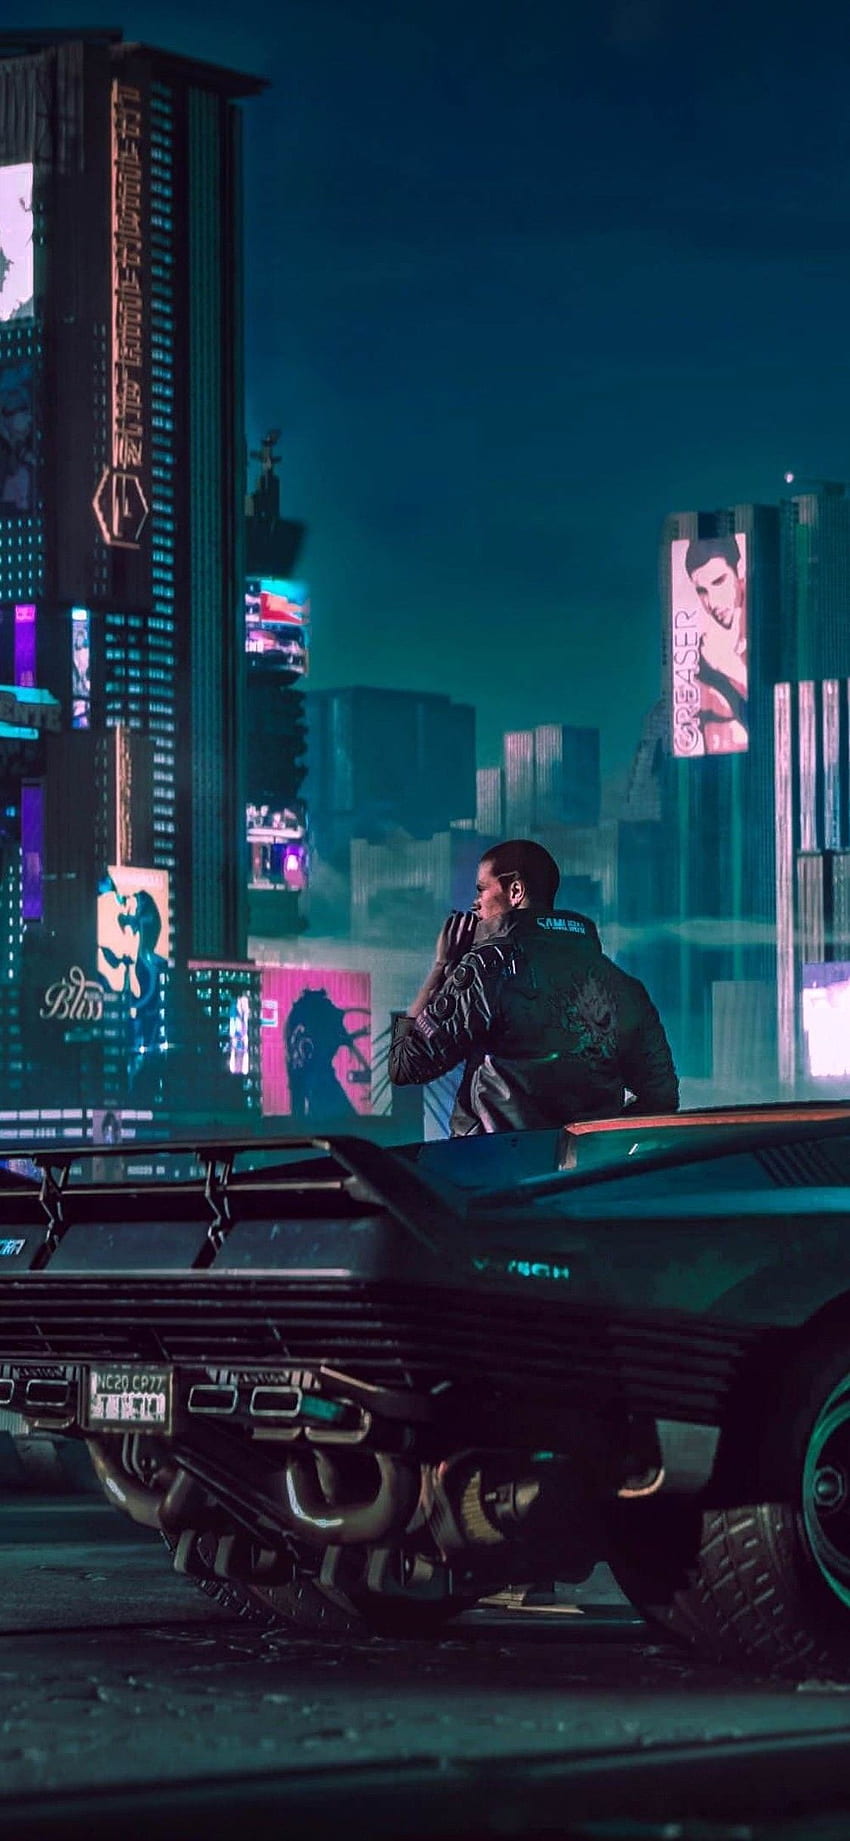 2018 cyberpunk 2077 HD wallpapers | Pxfuel